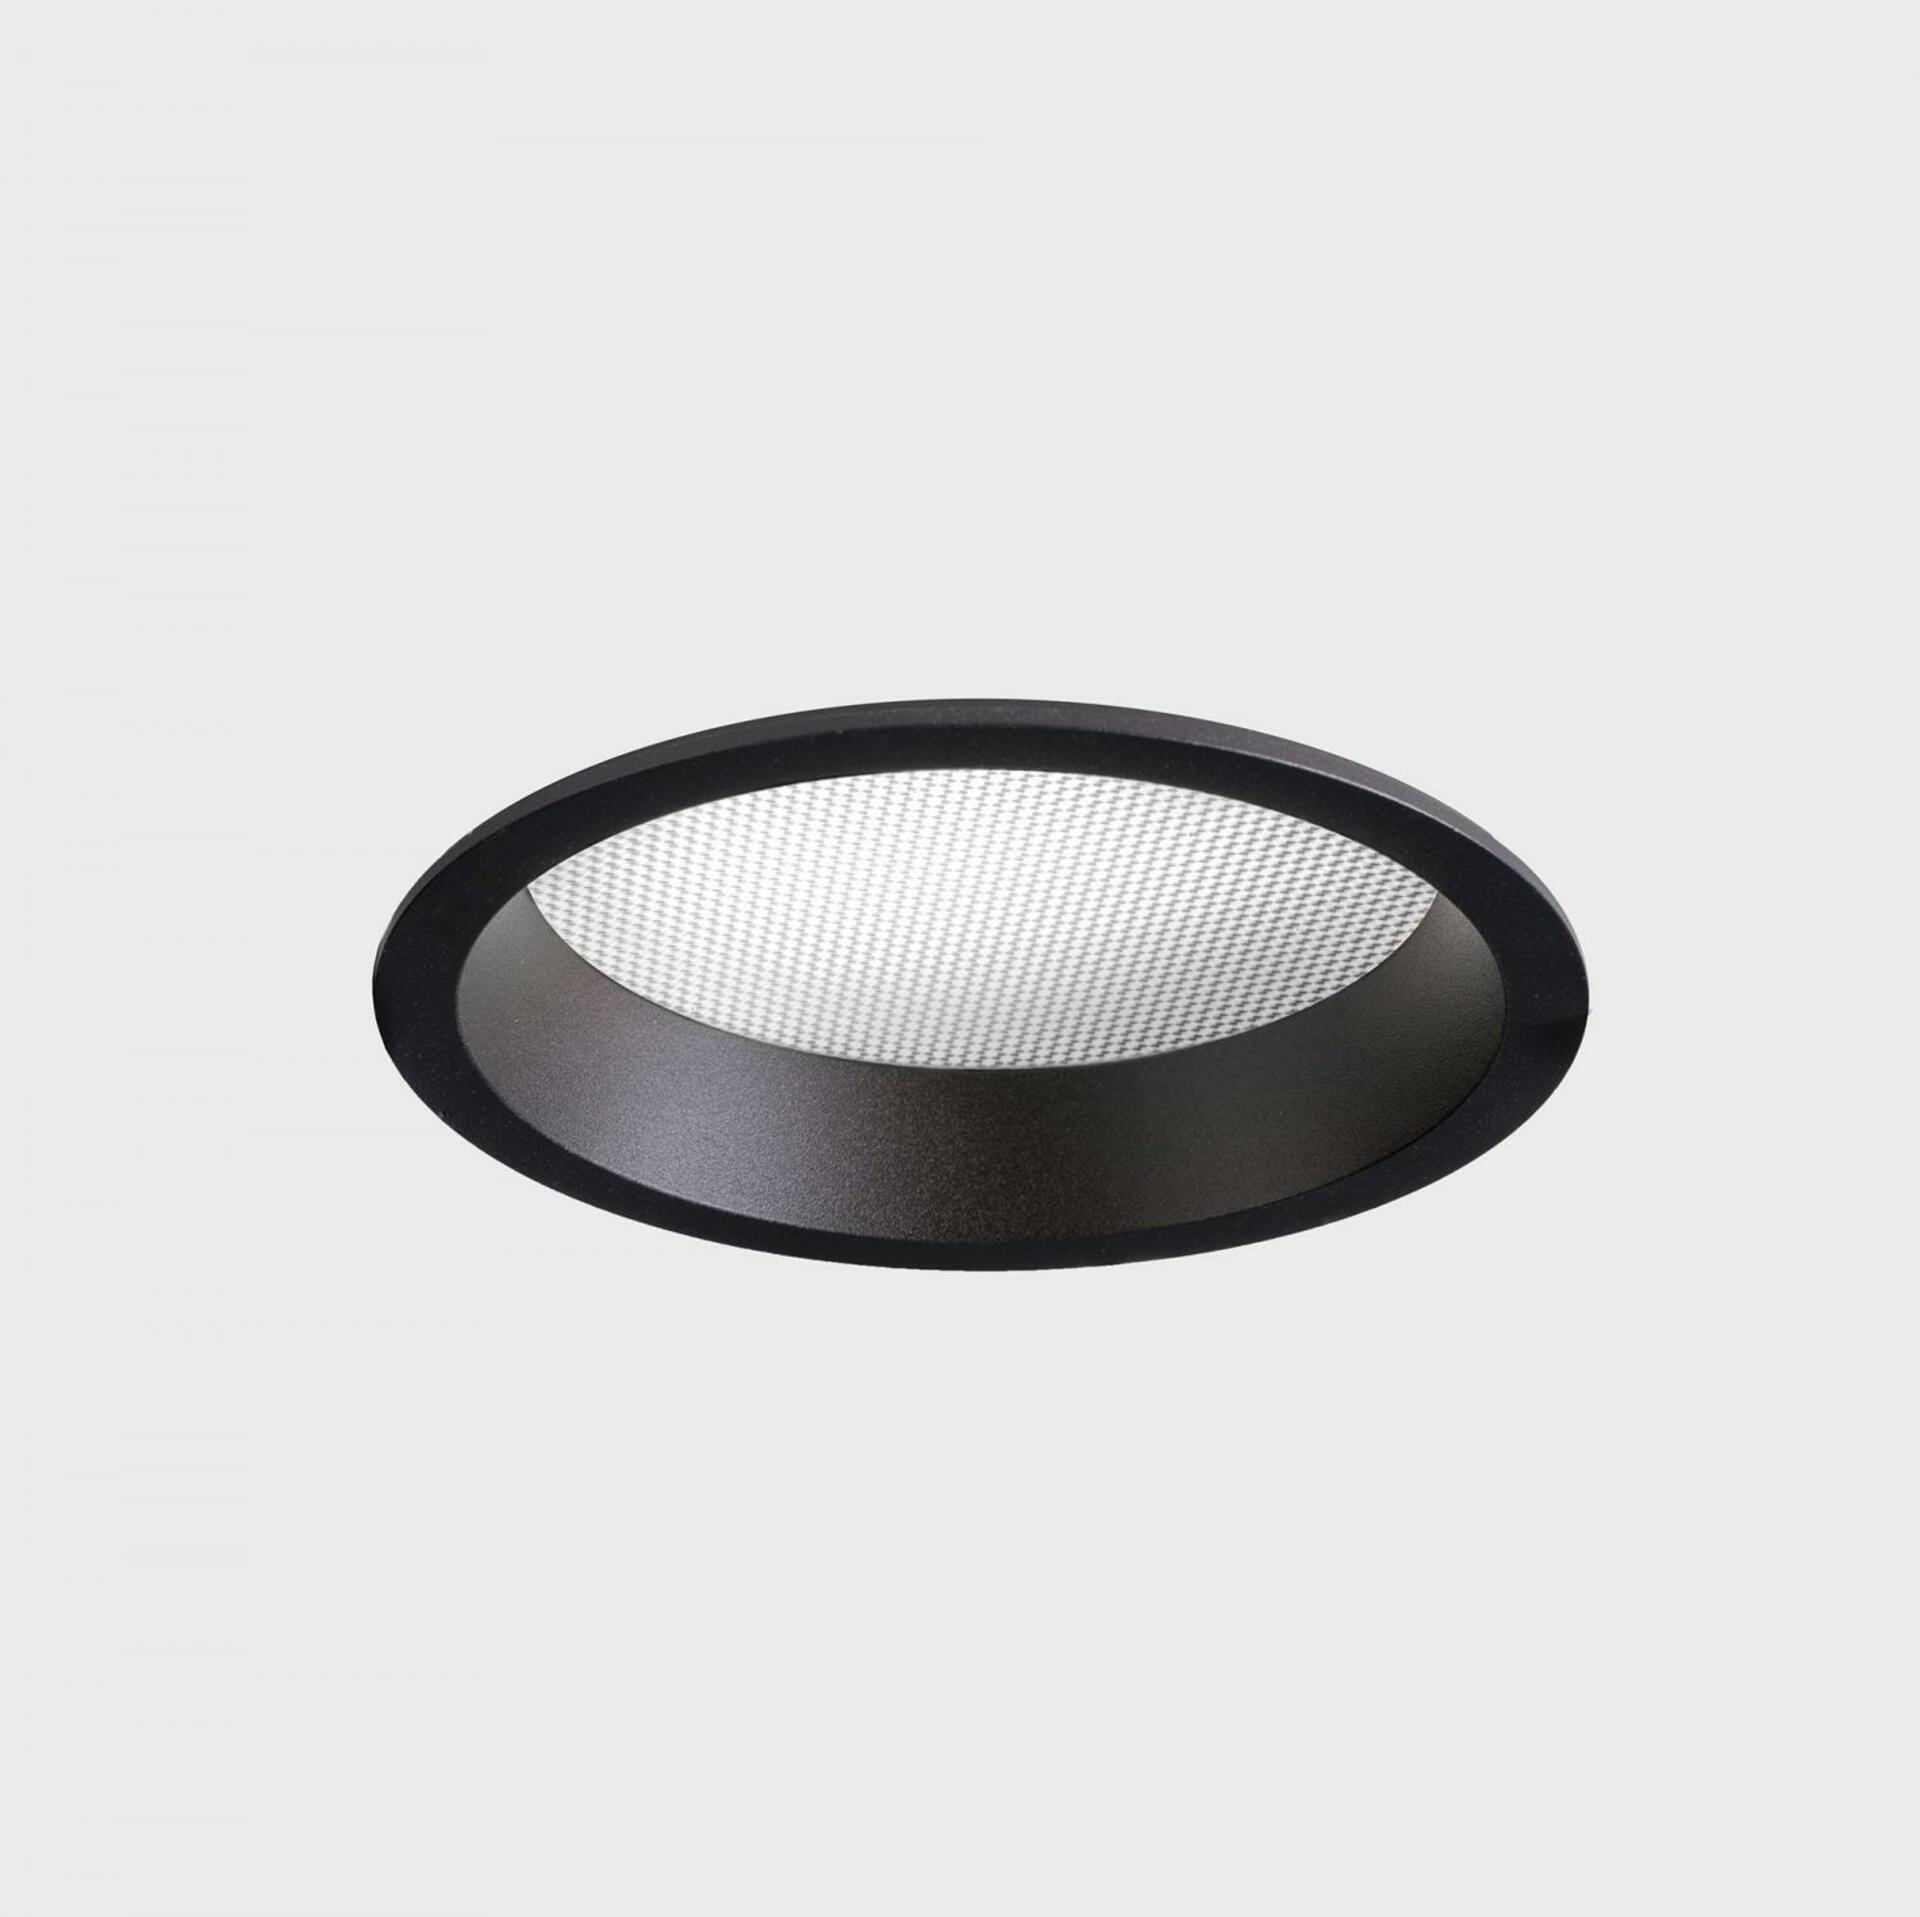 KOHL LIGHTING KOHL-Lighting LIM zapuštěné svítidlo s rámečkem pr. 103 mm černá 7 W CRI 80 3000K DALI